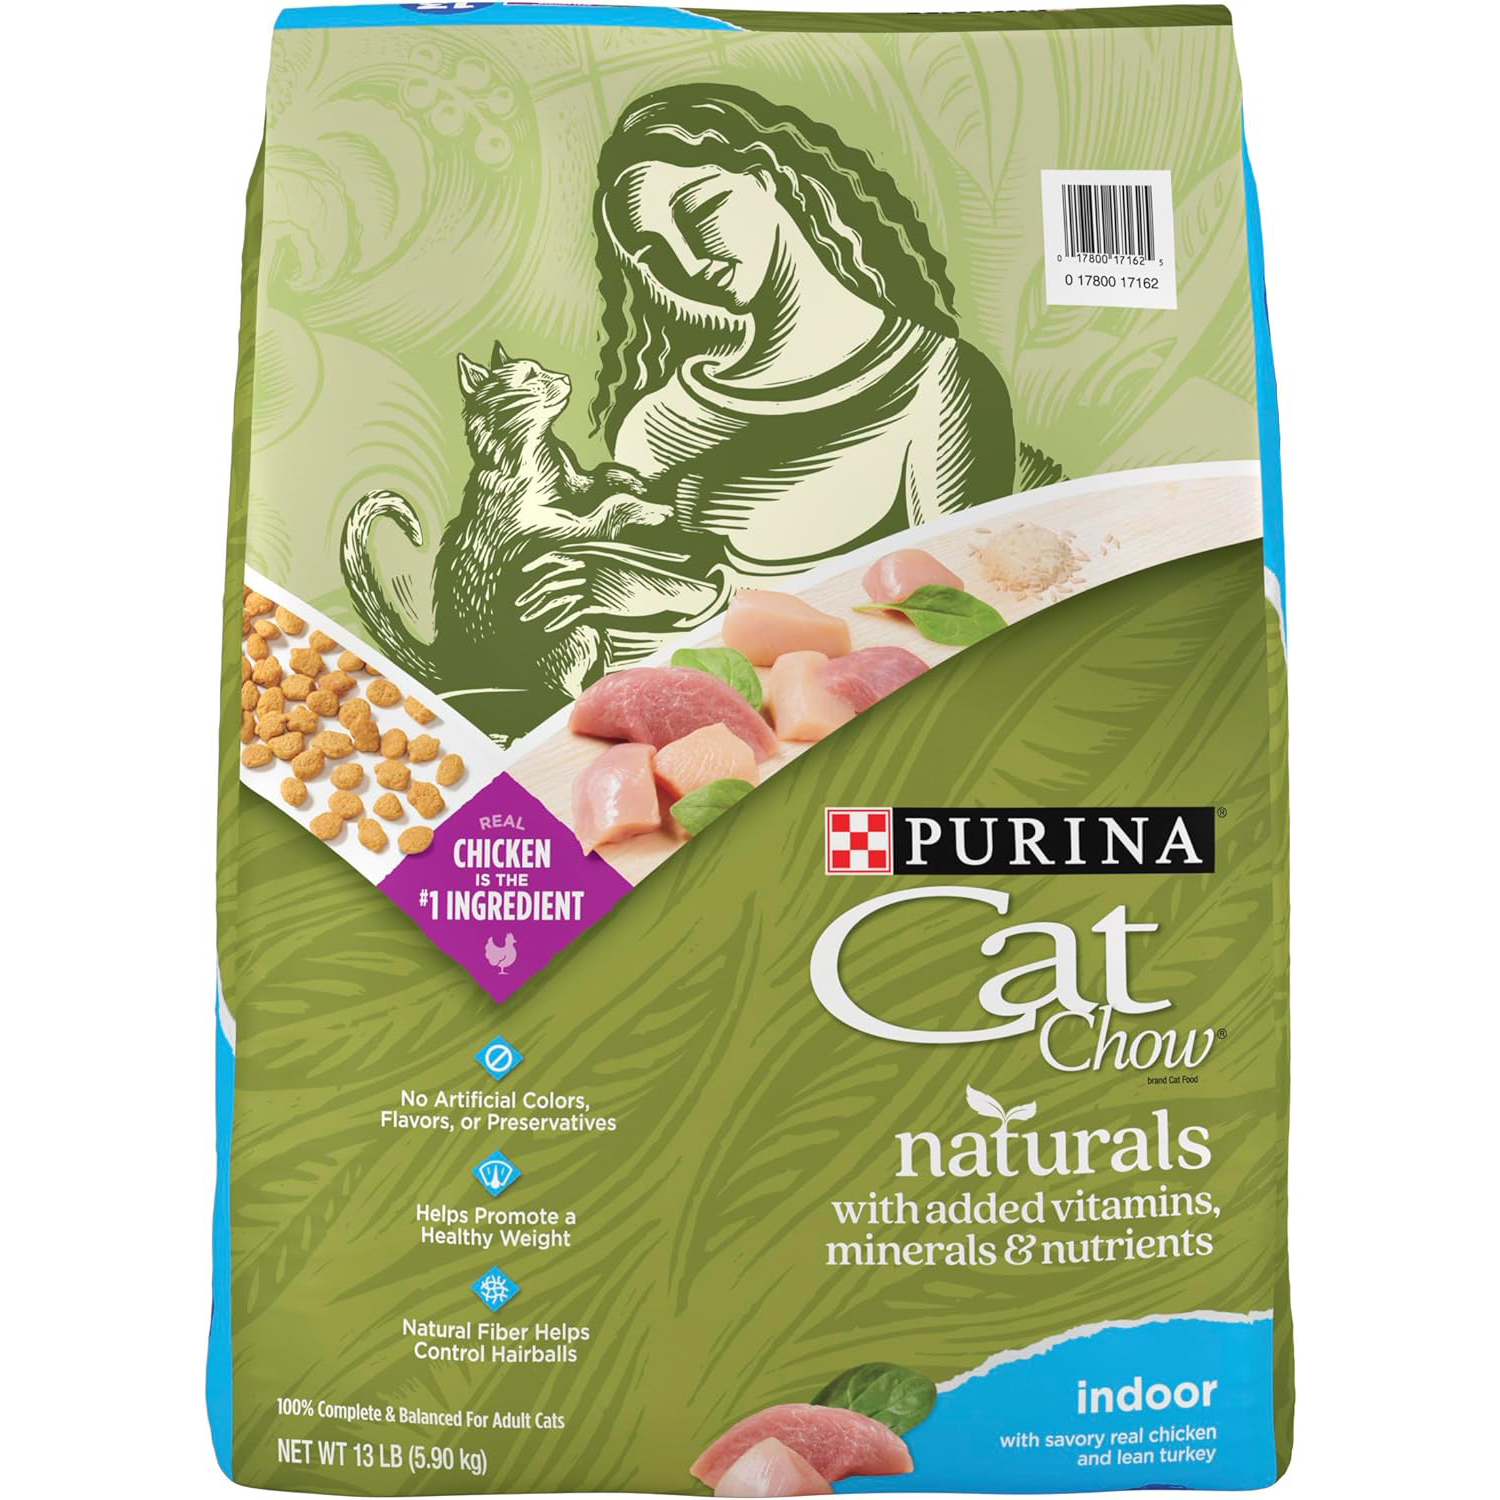 Purina Cat Chow Naturals Cat Food